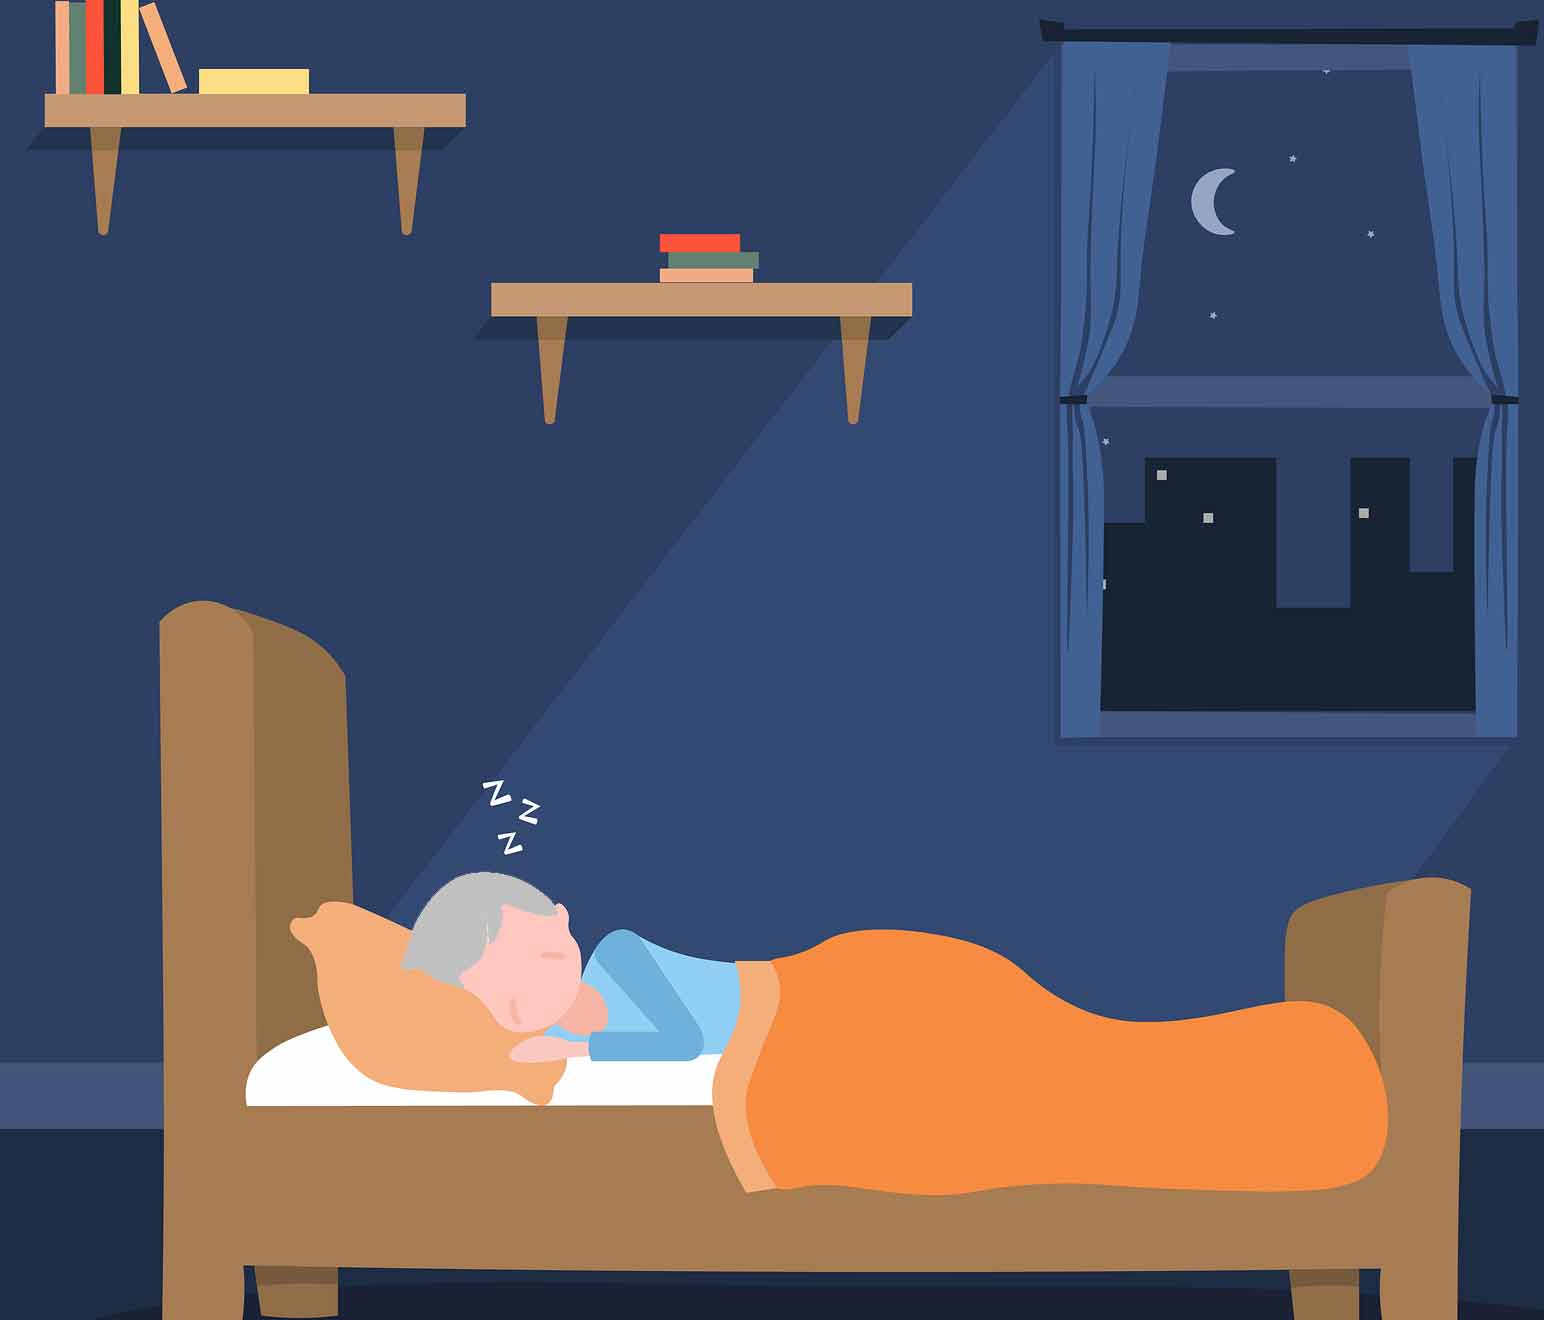 대표적인 수면장애로는 수면무호흡증, 하지불안증후군,렘수면행동장애 등이 있습니다.